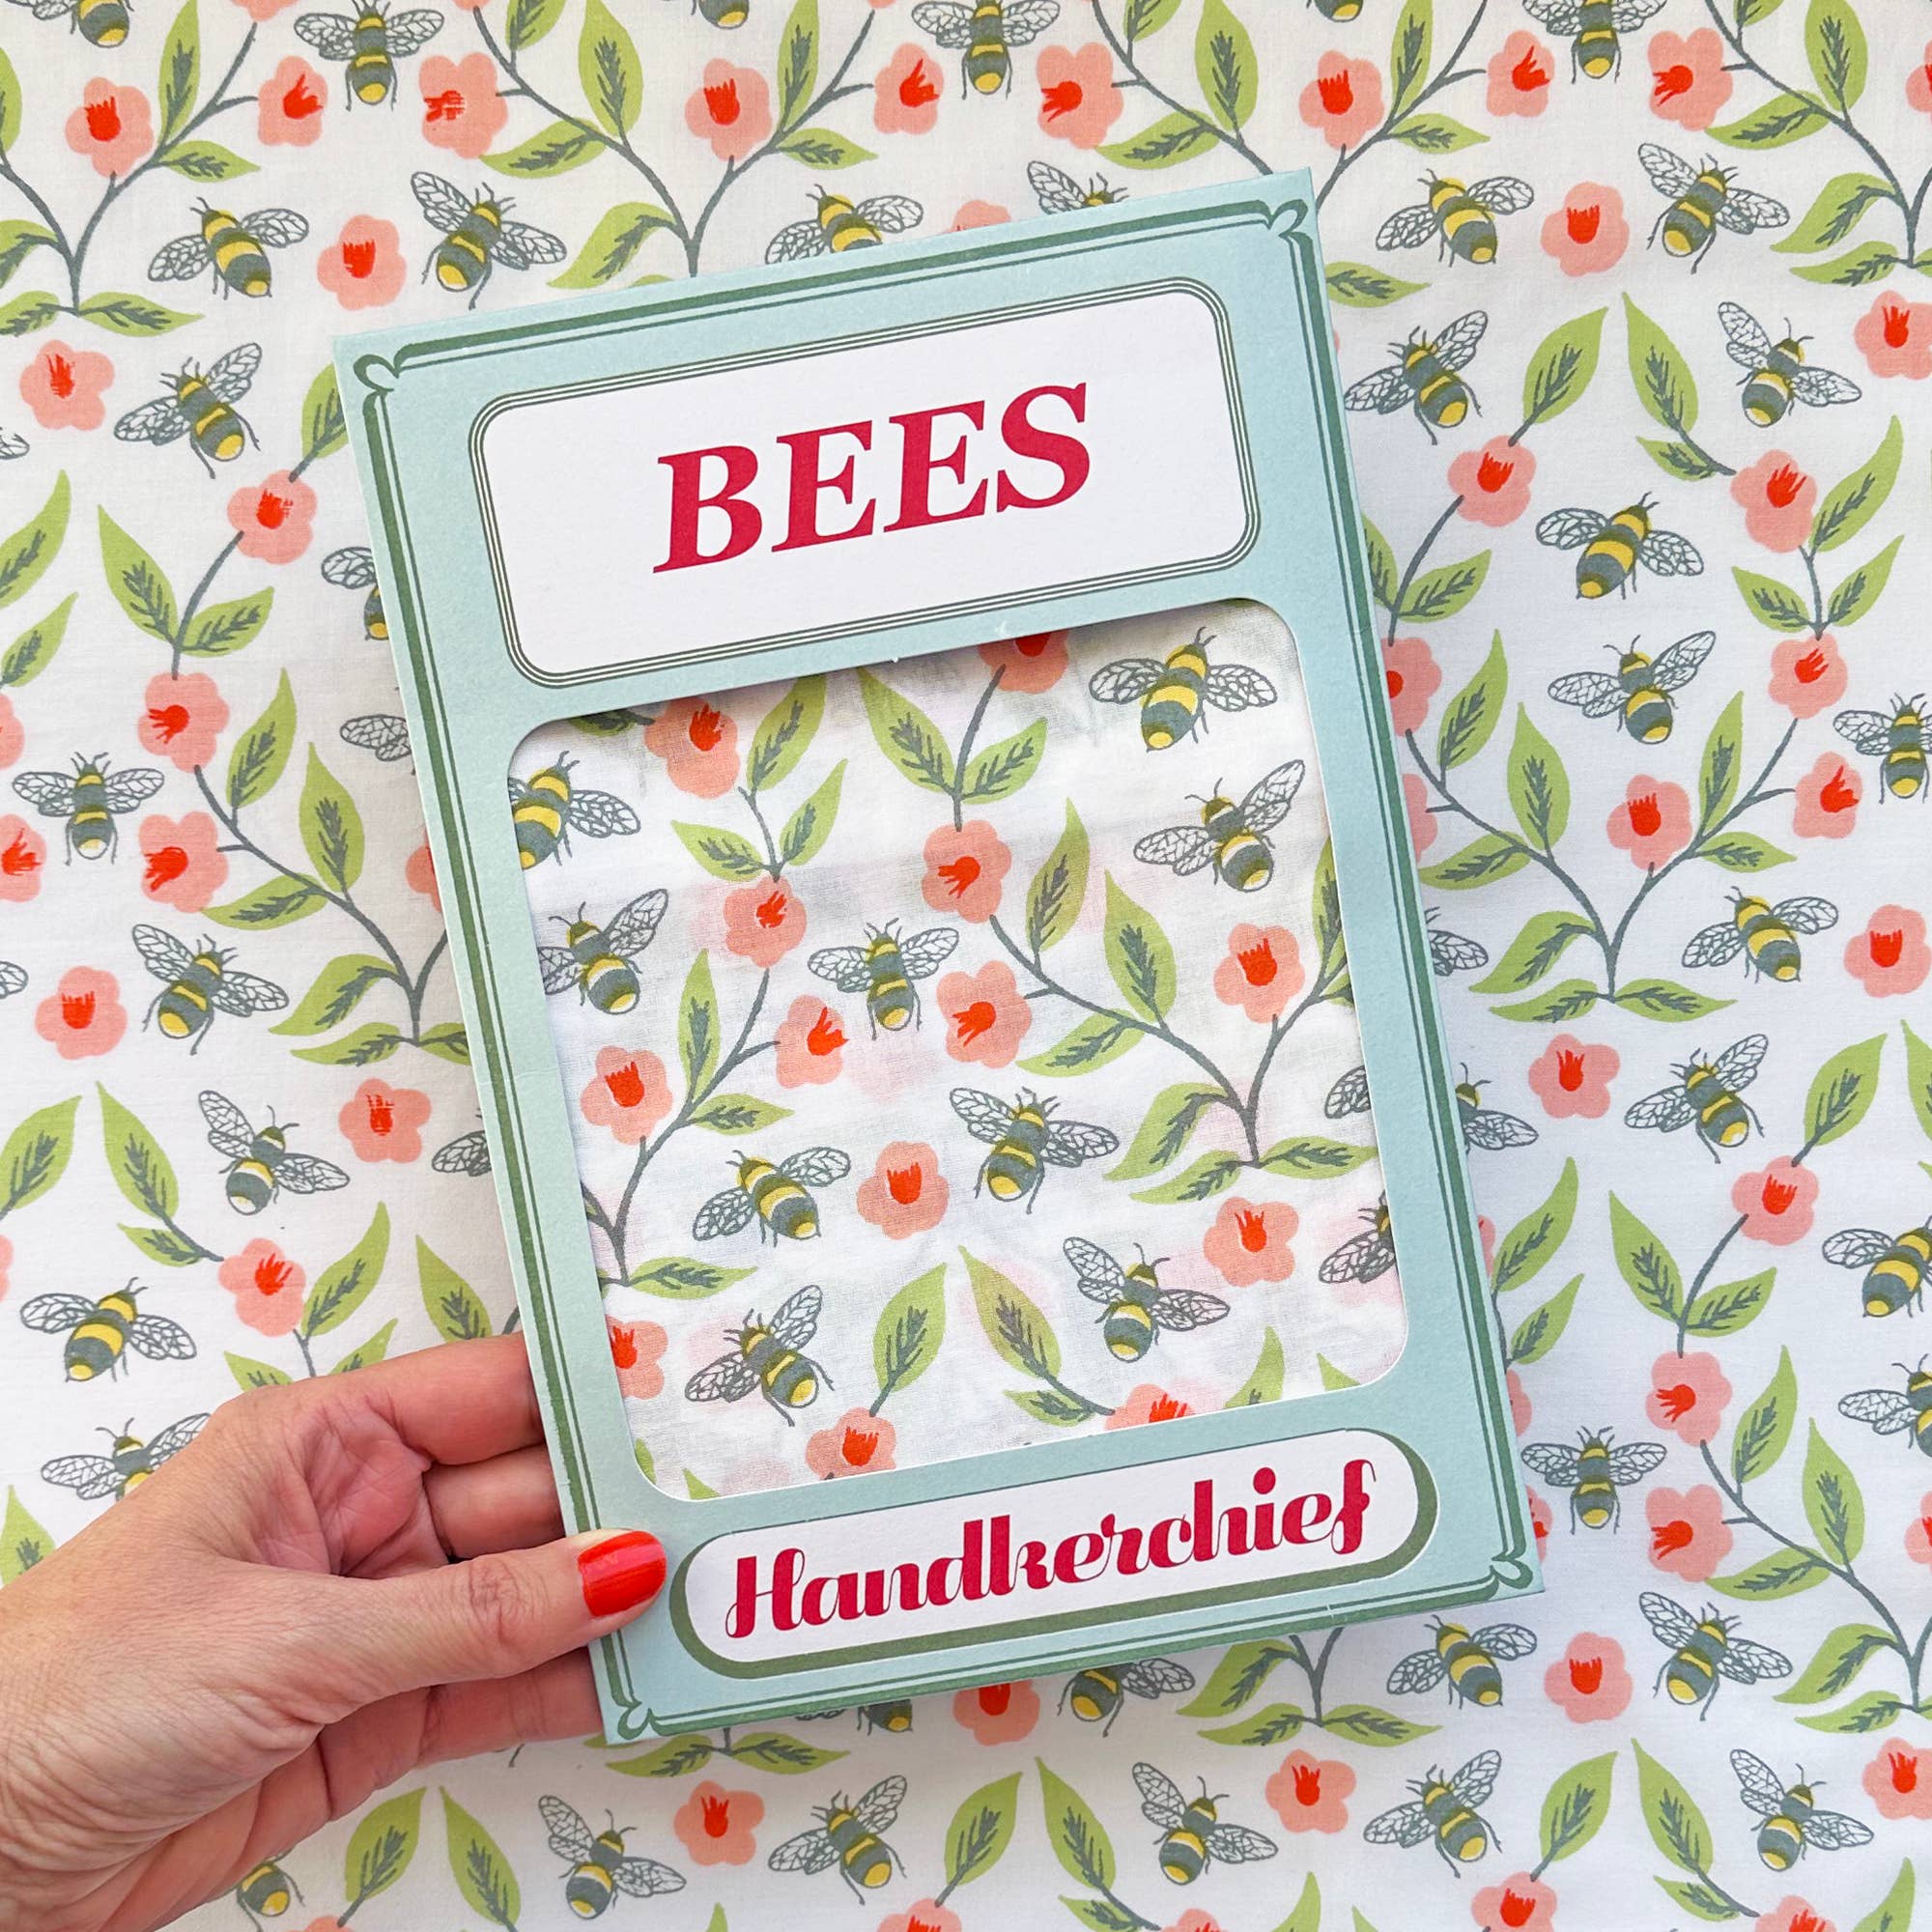 Bees Handkerchief Pocket Square Bandana